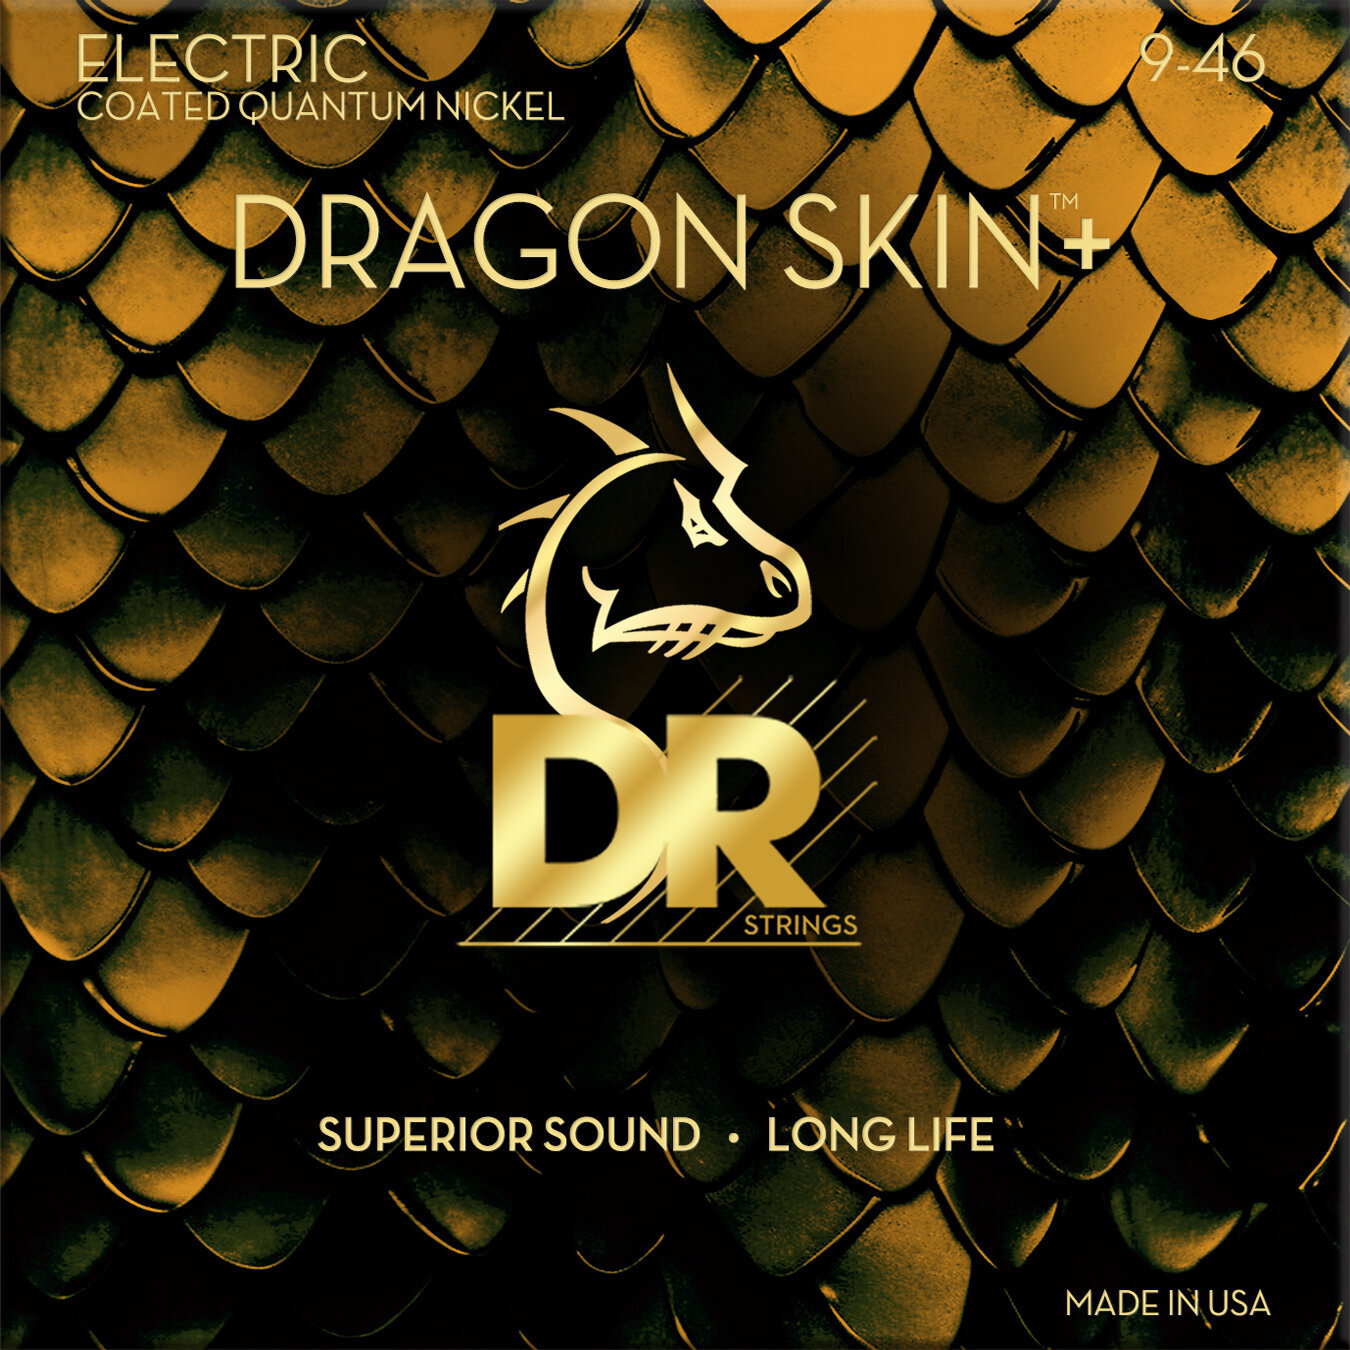 Cordes pour guitares électriques DR Strings Dragon Skin+ Coated Light to Medium 9-46